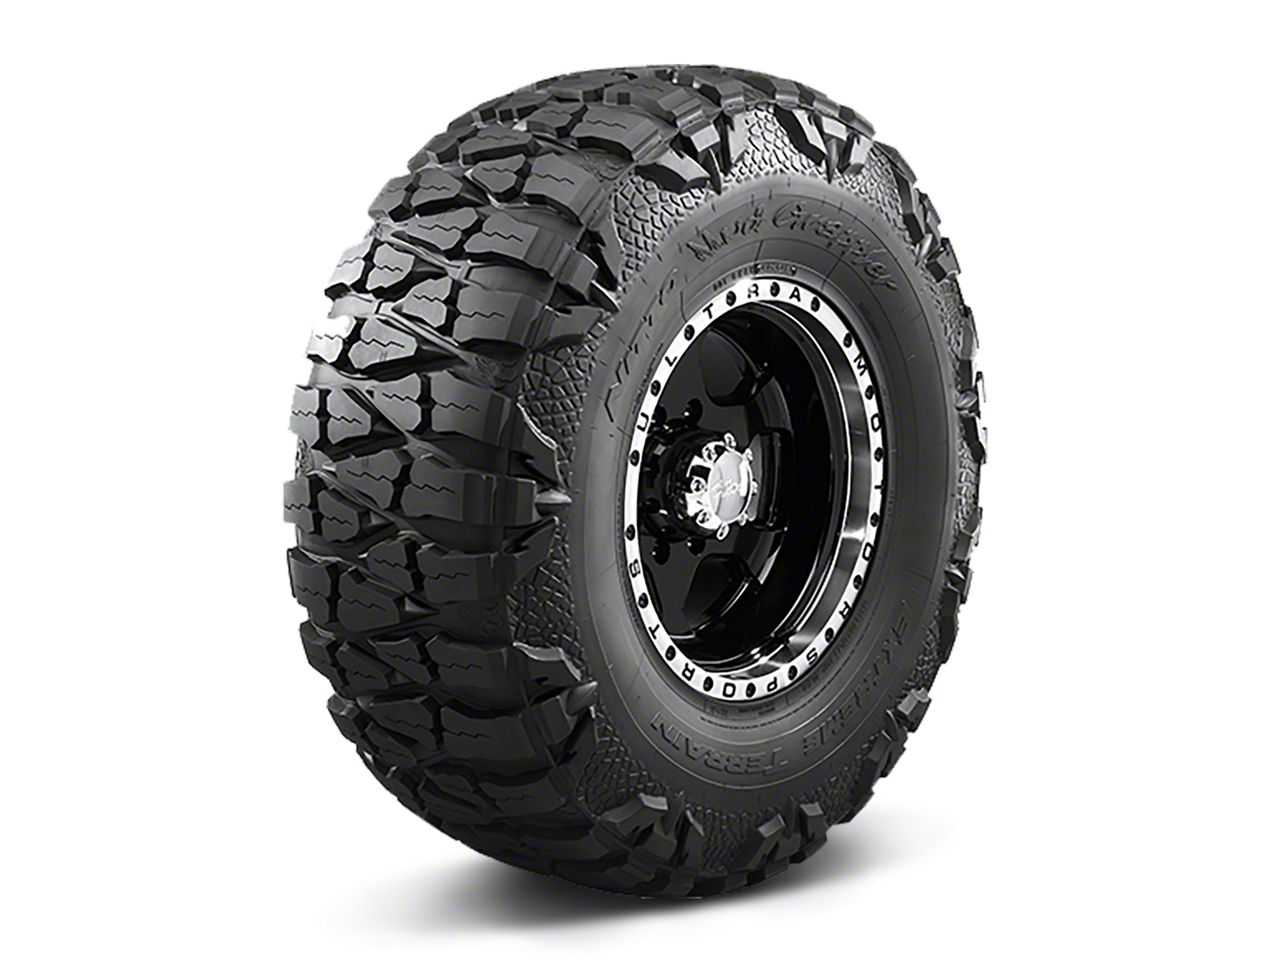 Sierra3500 Mud Terrain Tires 2015-2019